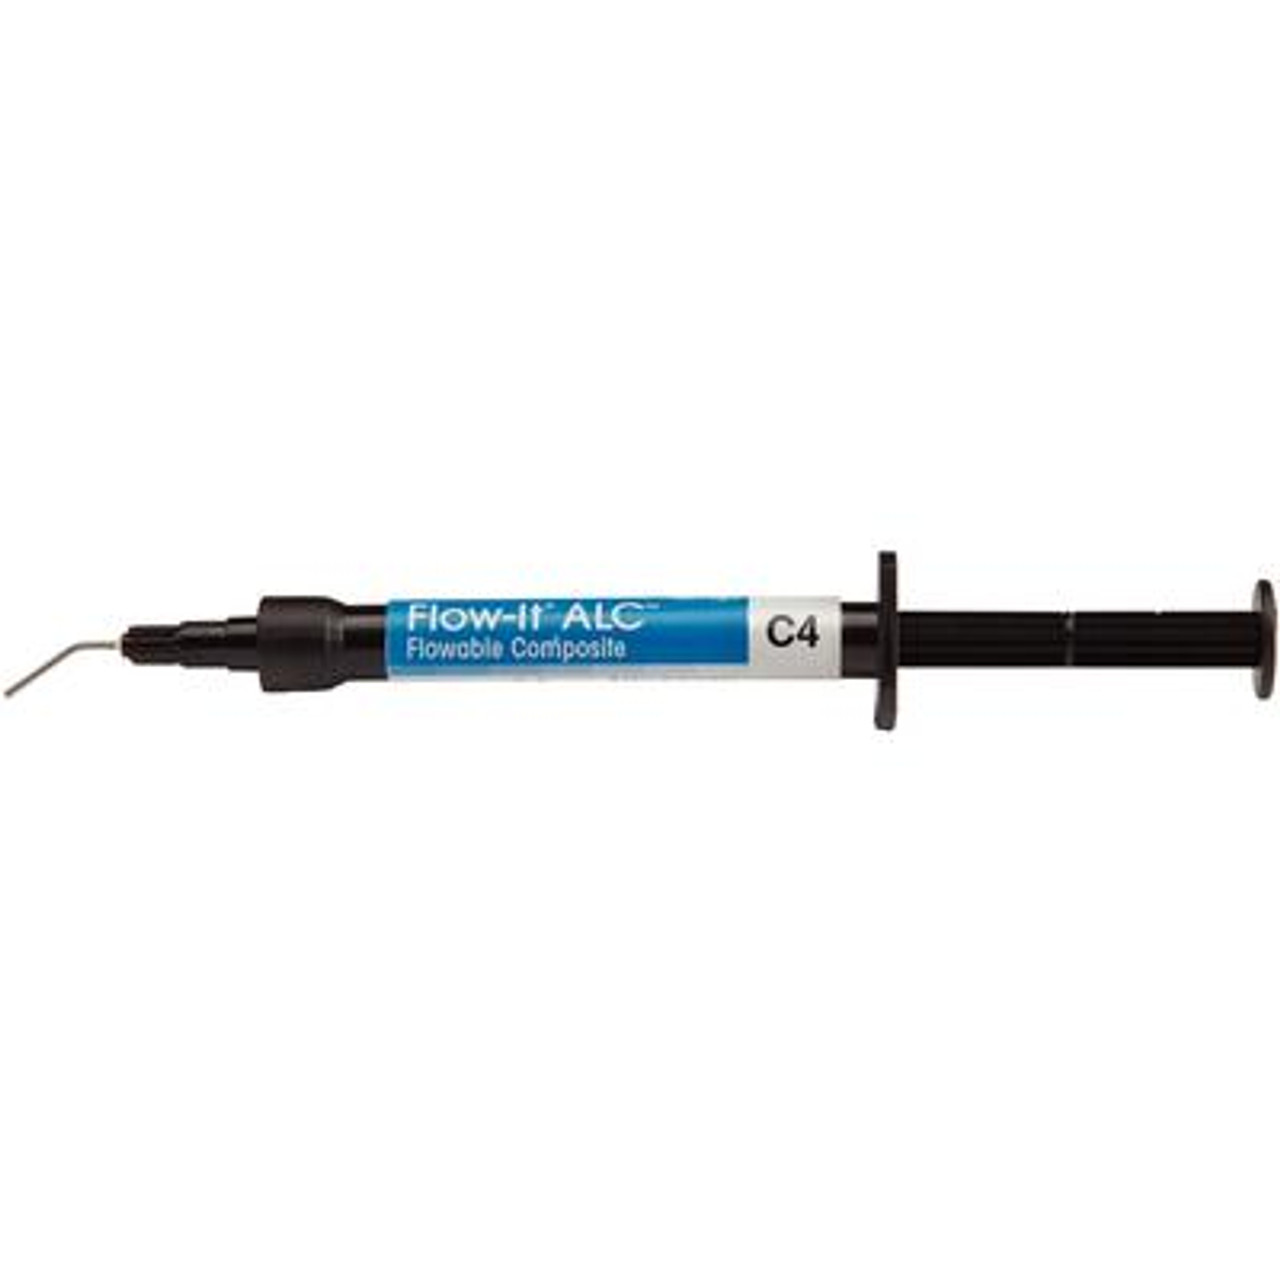 Pentron Flow-It ALC Flowable Composite C4 Syringe 4g & Tips